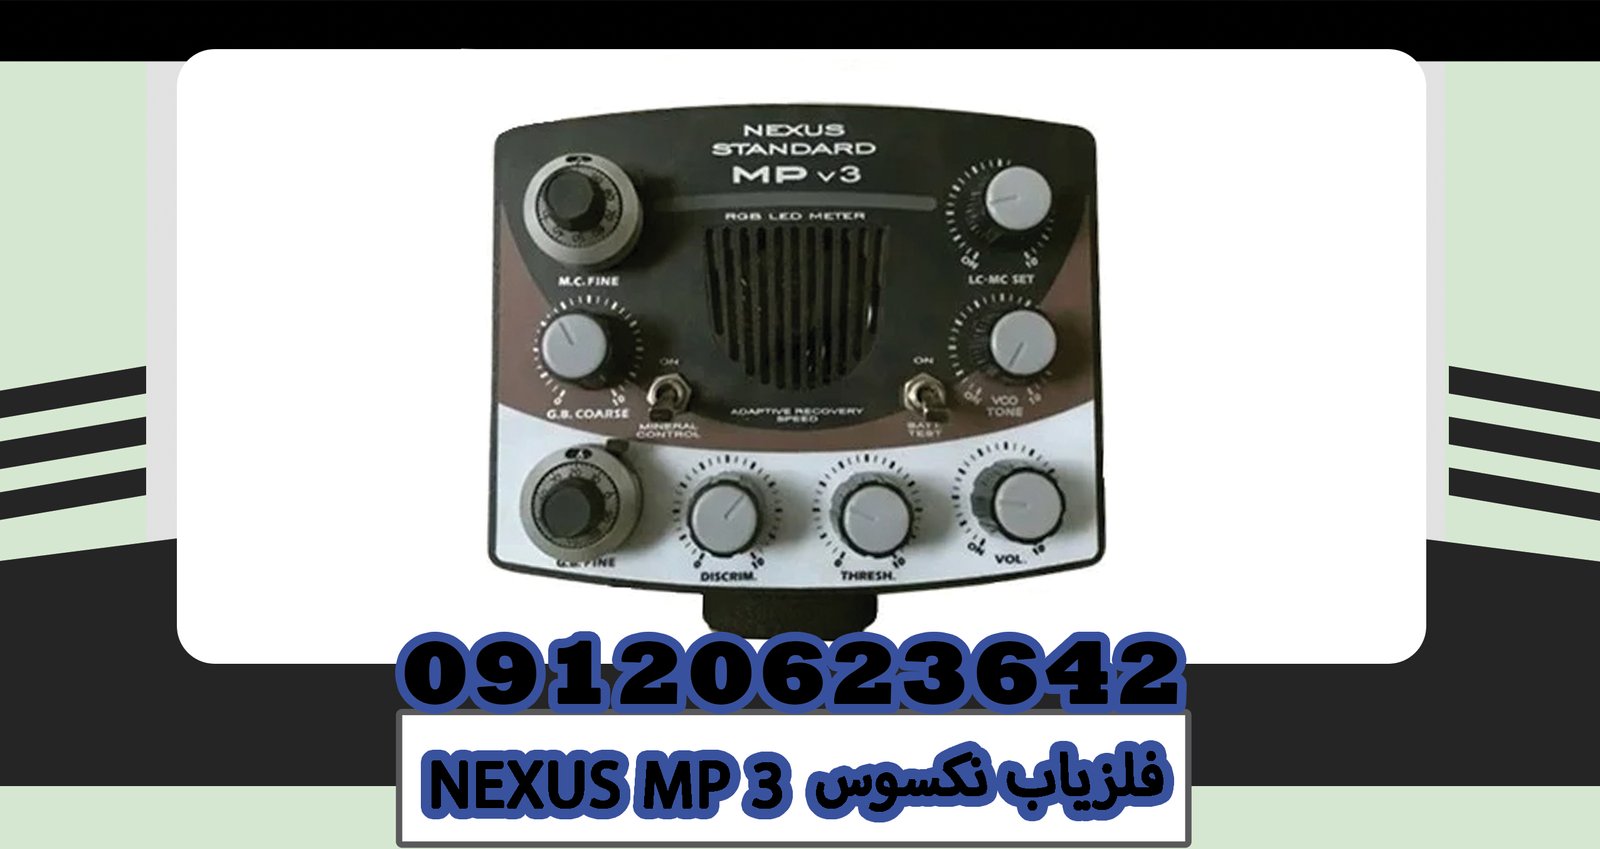 NEXUS MP 3